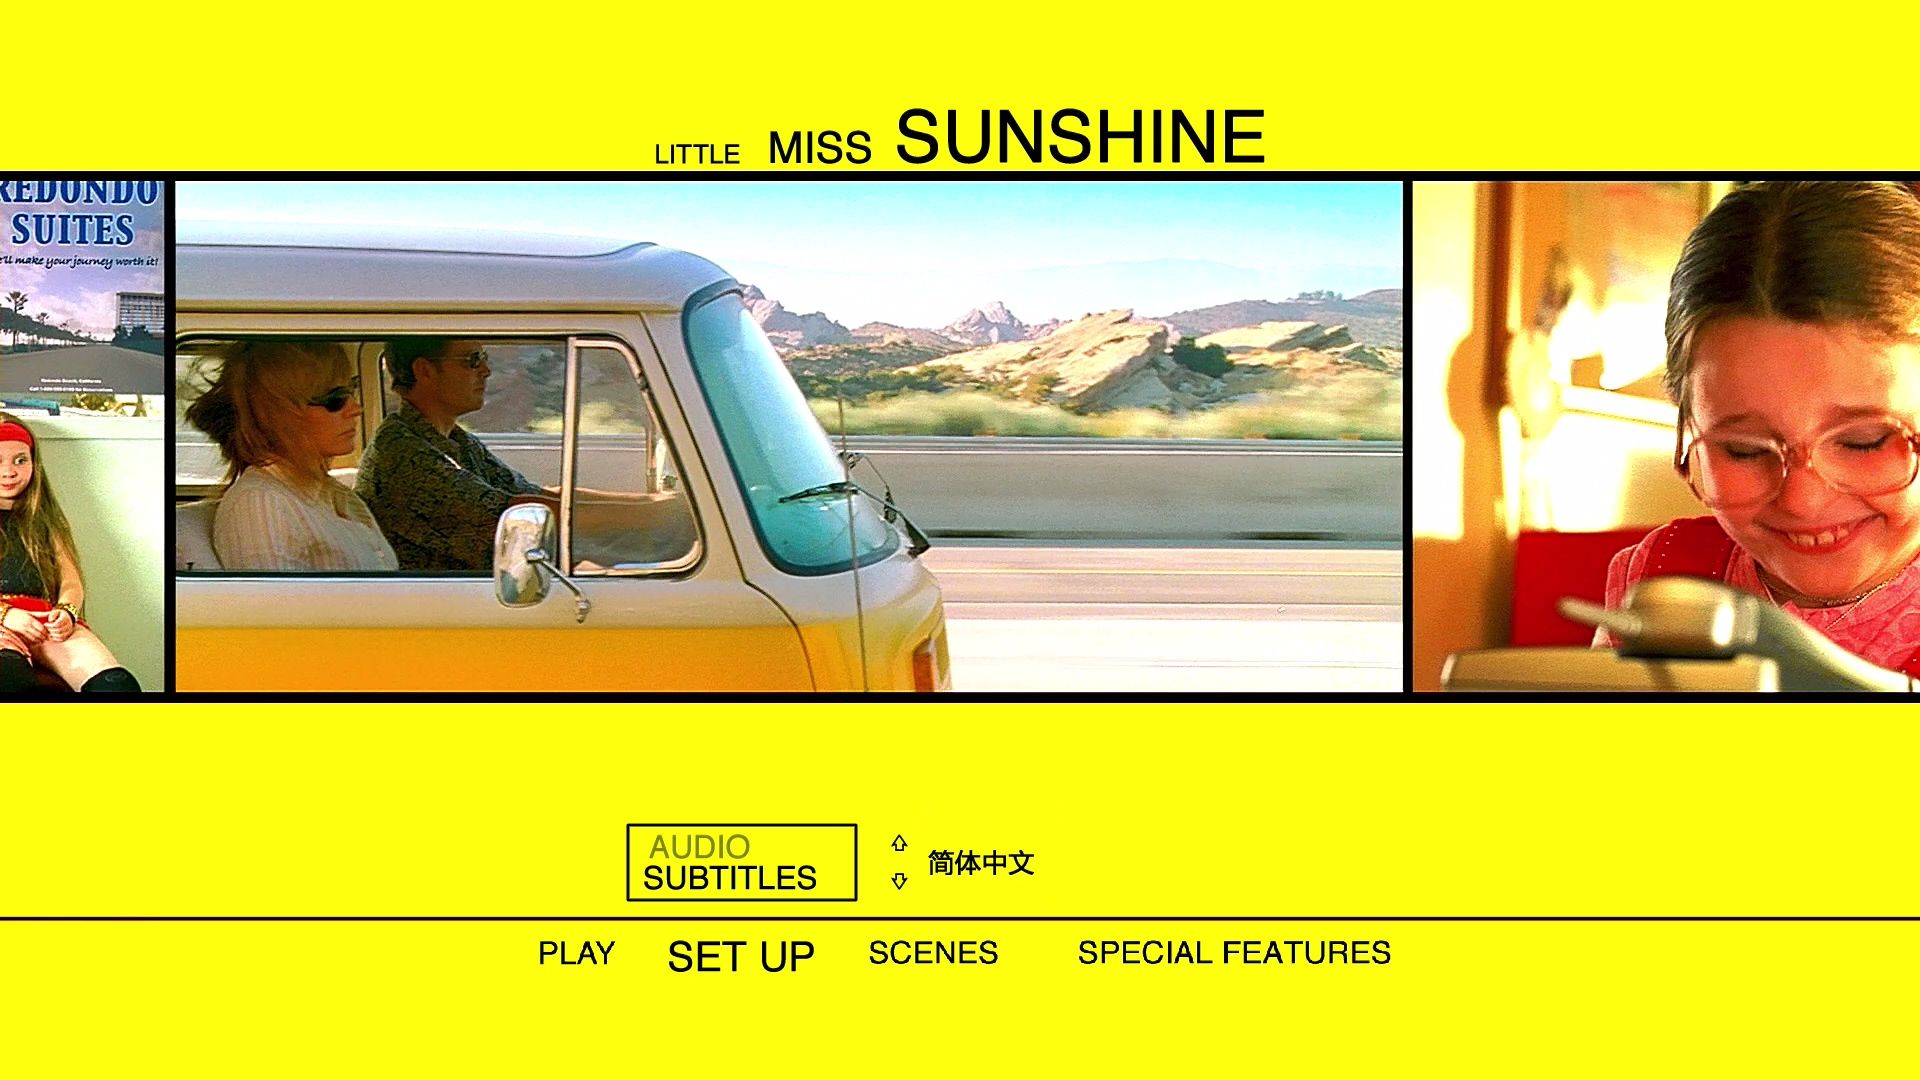 阳光小美女 [DIY上译/央视长影双国语+简繁R3双语简体.上译国配简体+菜单修改] Little Miss Sunshine 2006 1080p CEE Blu-ray AVC DTS-HD MA 5.1 DIY-Chinagear@HDSky    [35.27 GB ]-6.jpg